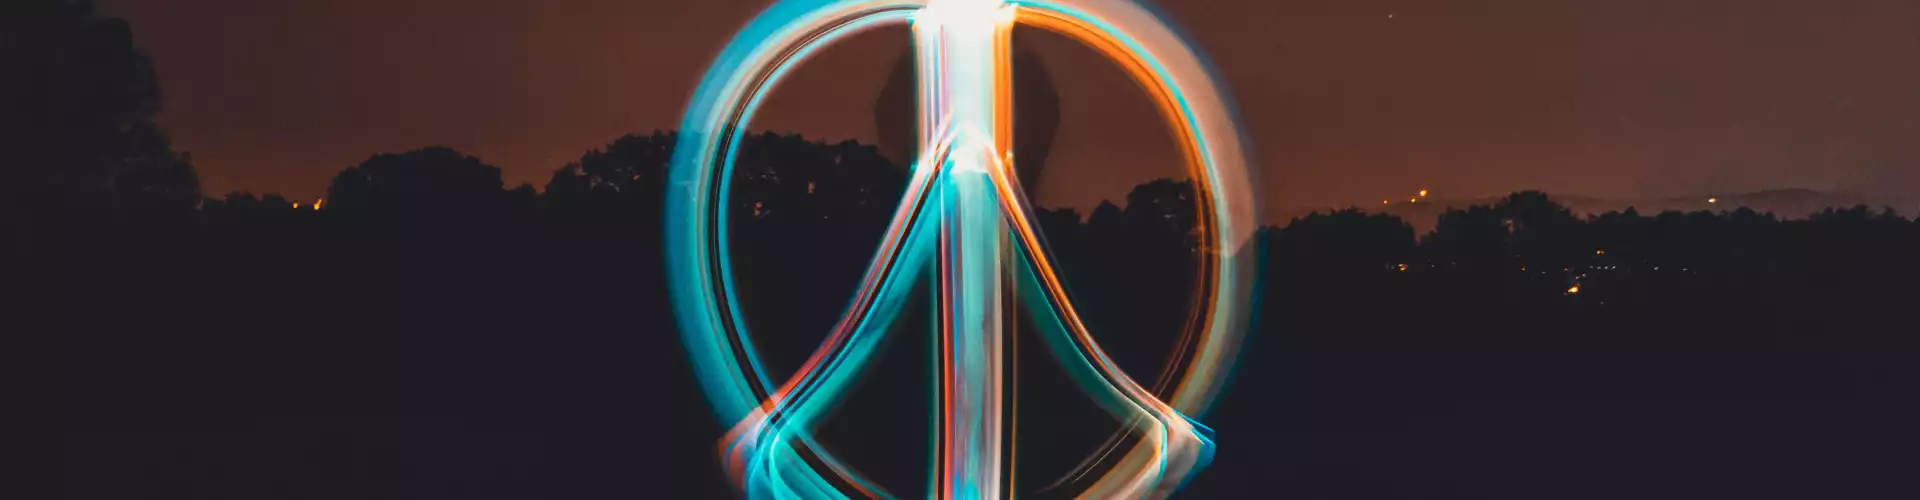 和平之路 - 6 週課程